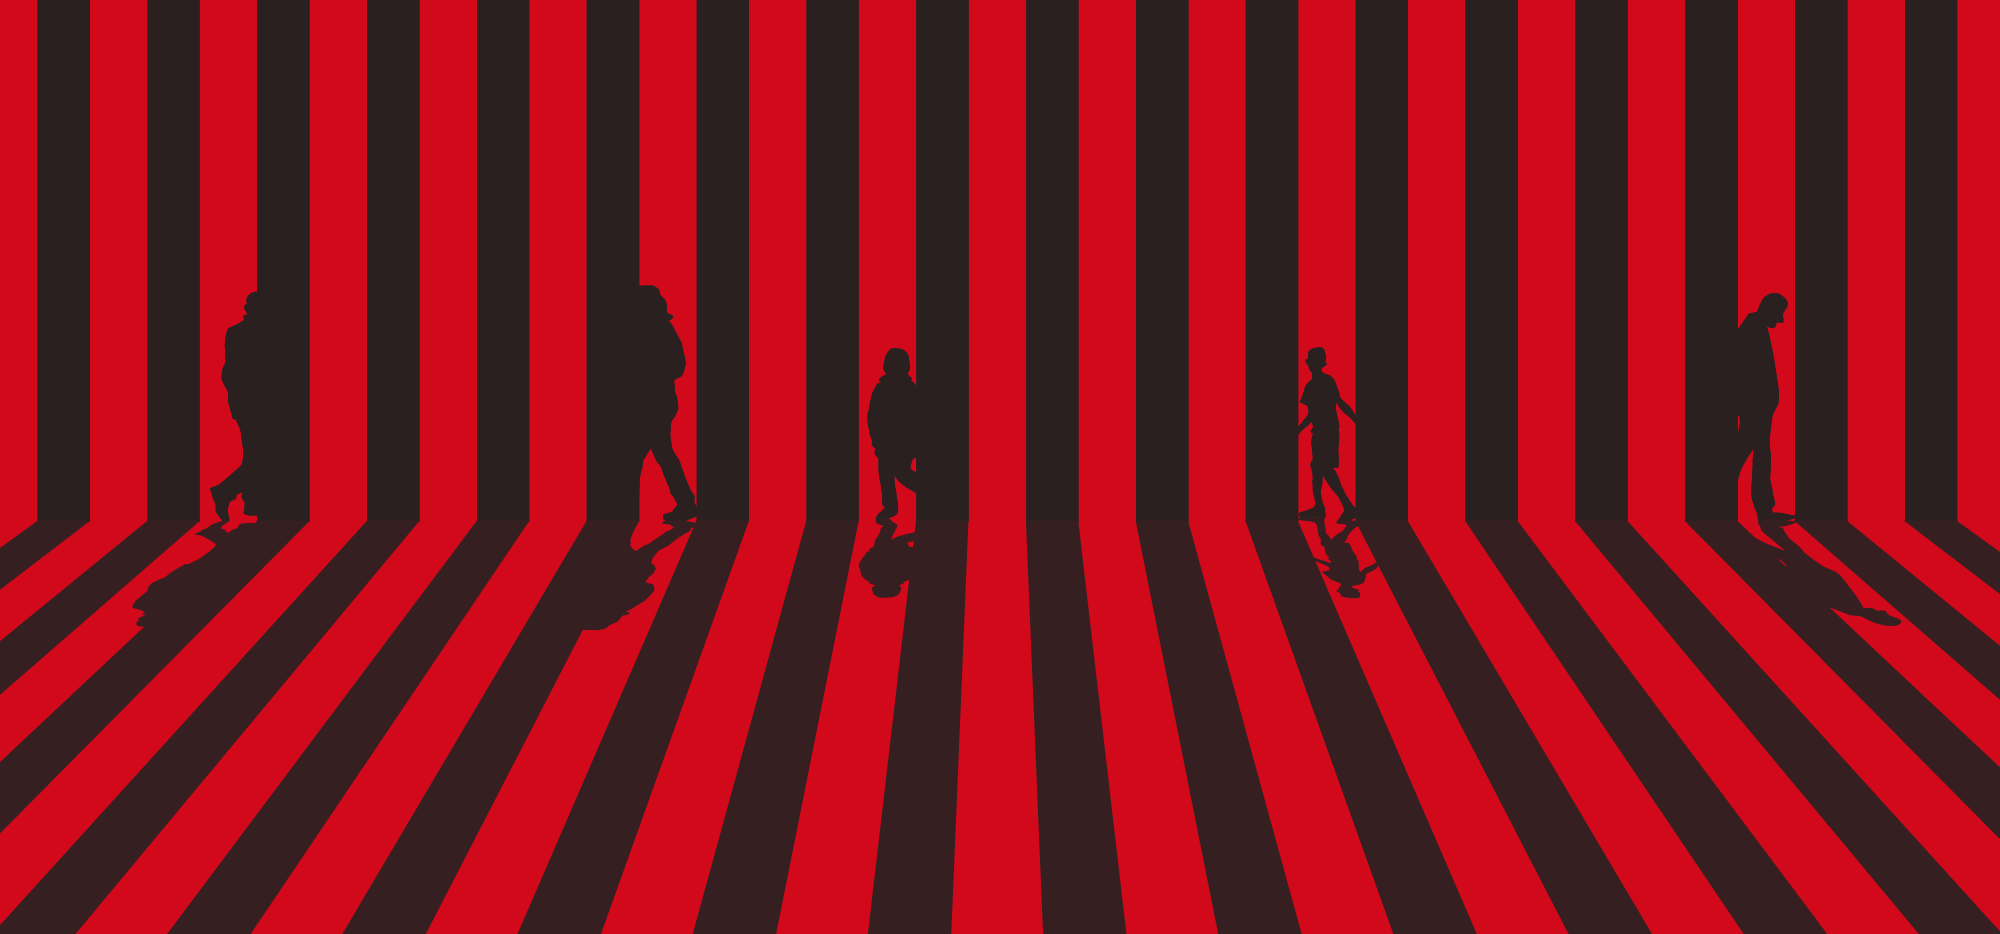 Figures walking behind black vertical bars